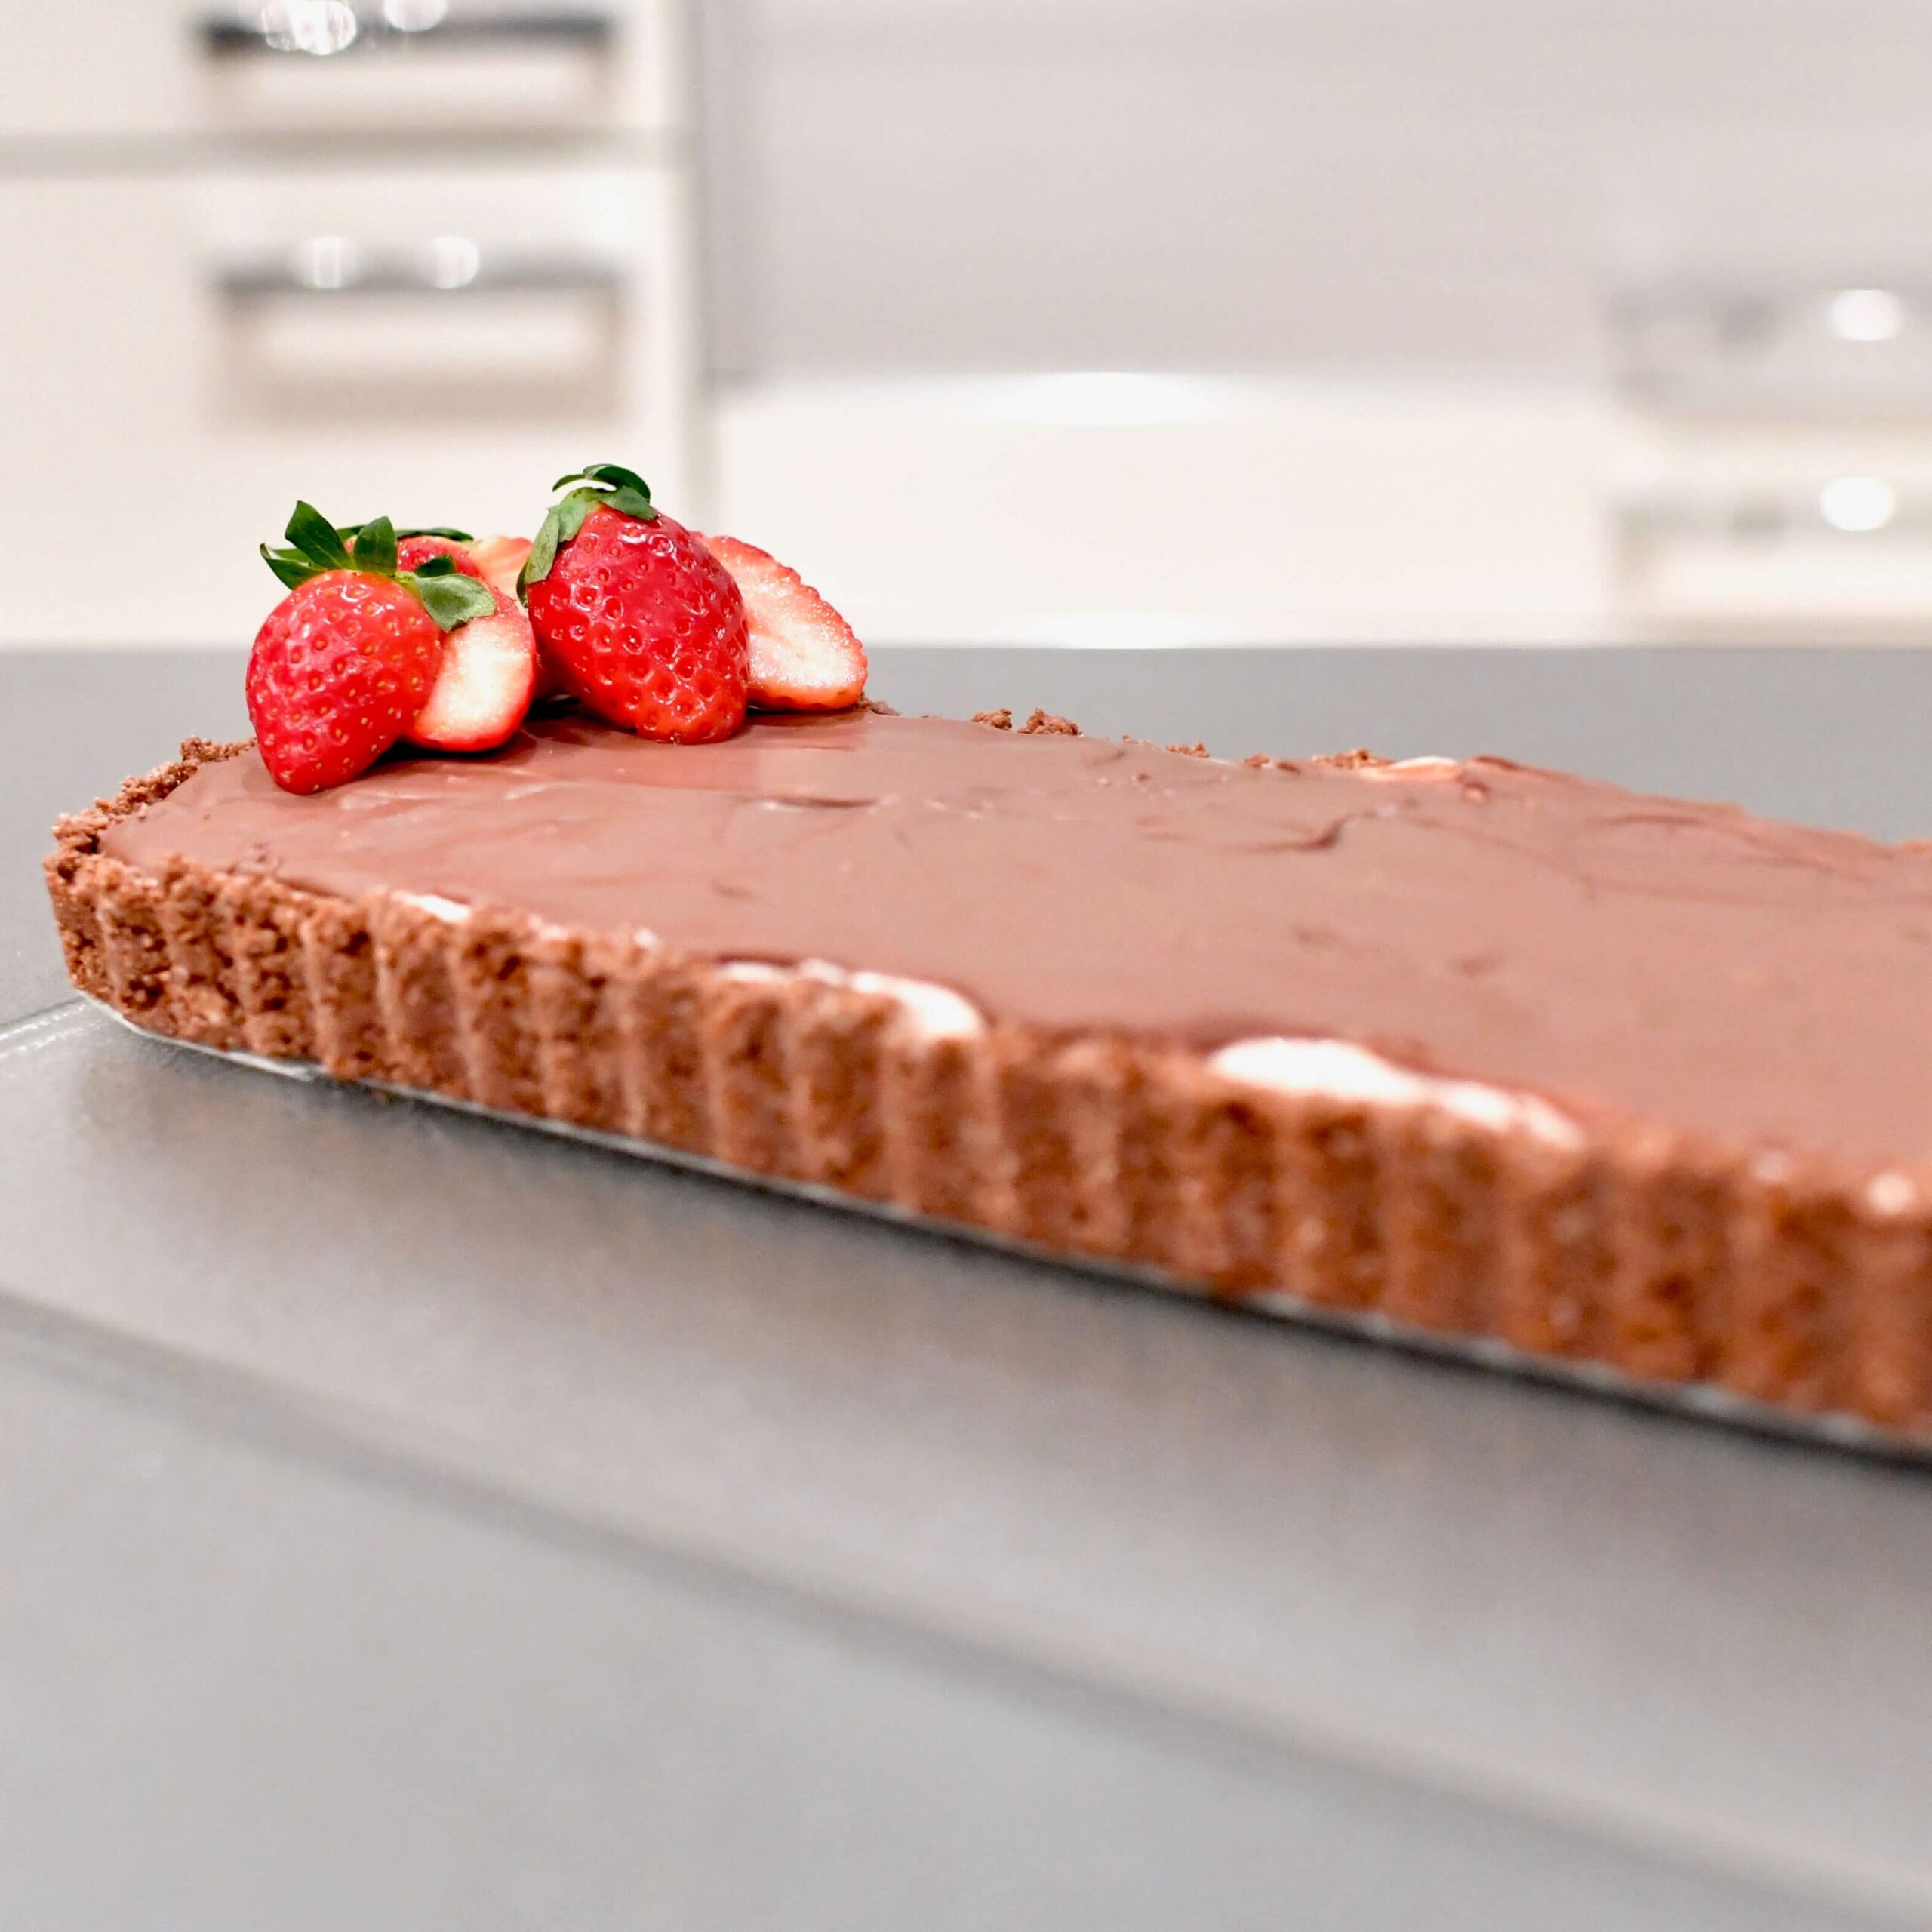 Strawberry & Chocolate No-Bake Tart